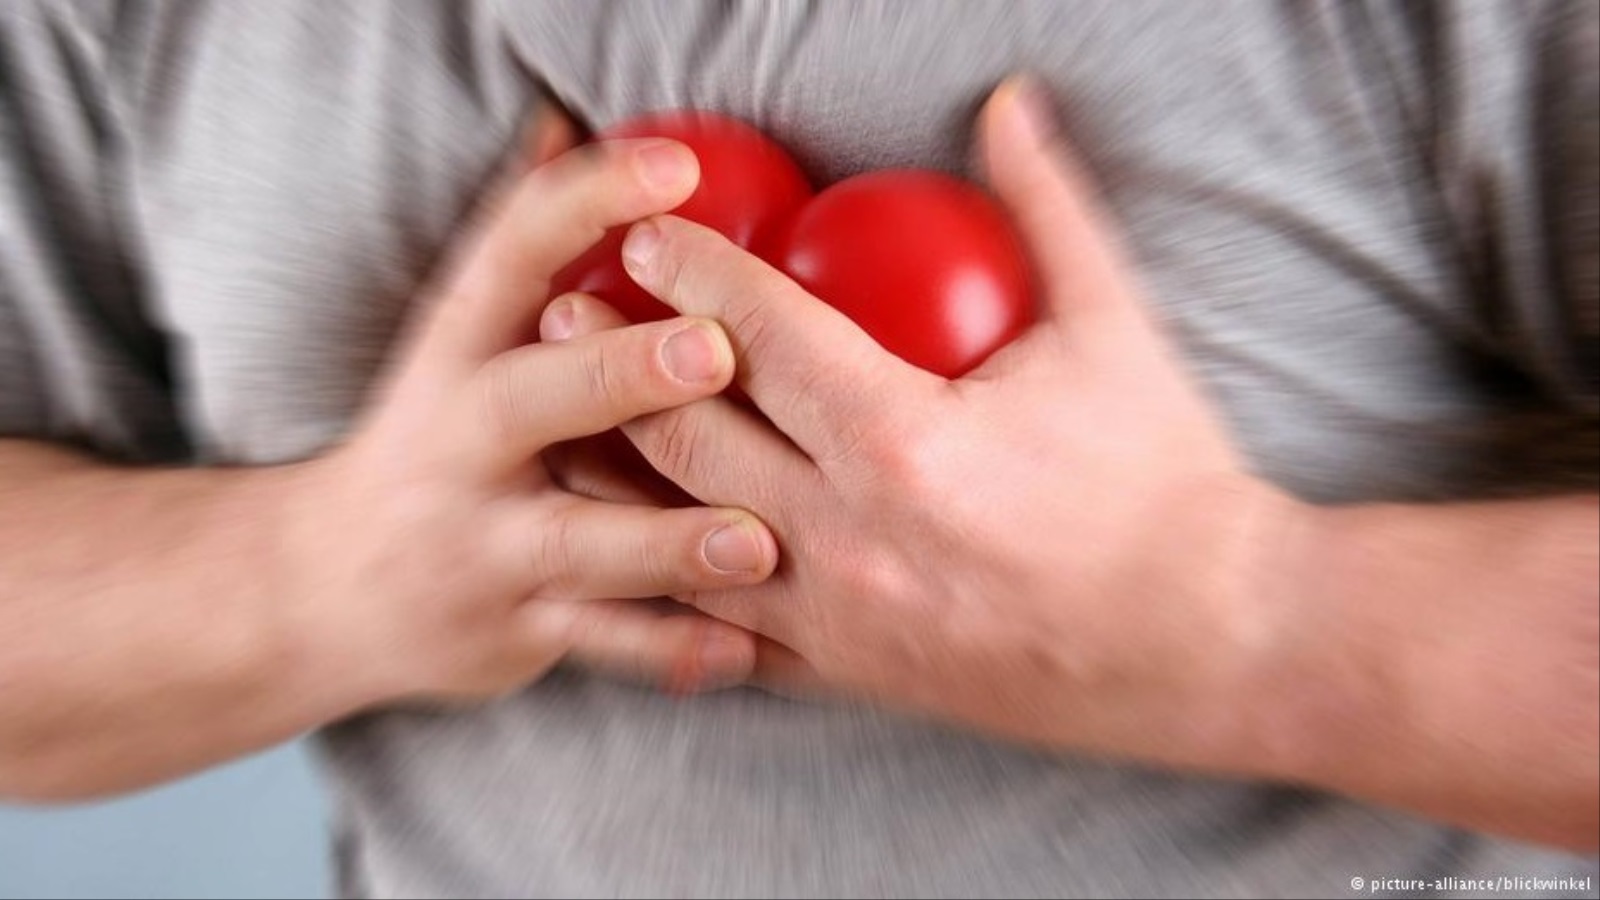 10 علامات تقول لك: النوبة القلبية تقترب